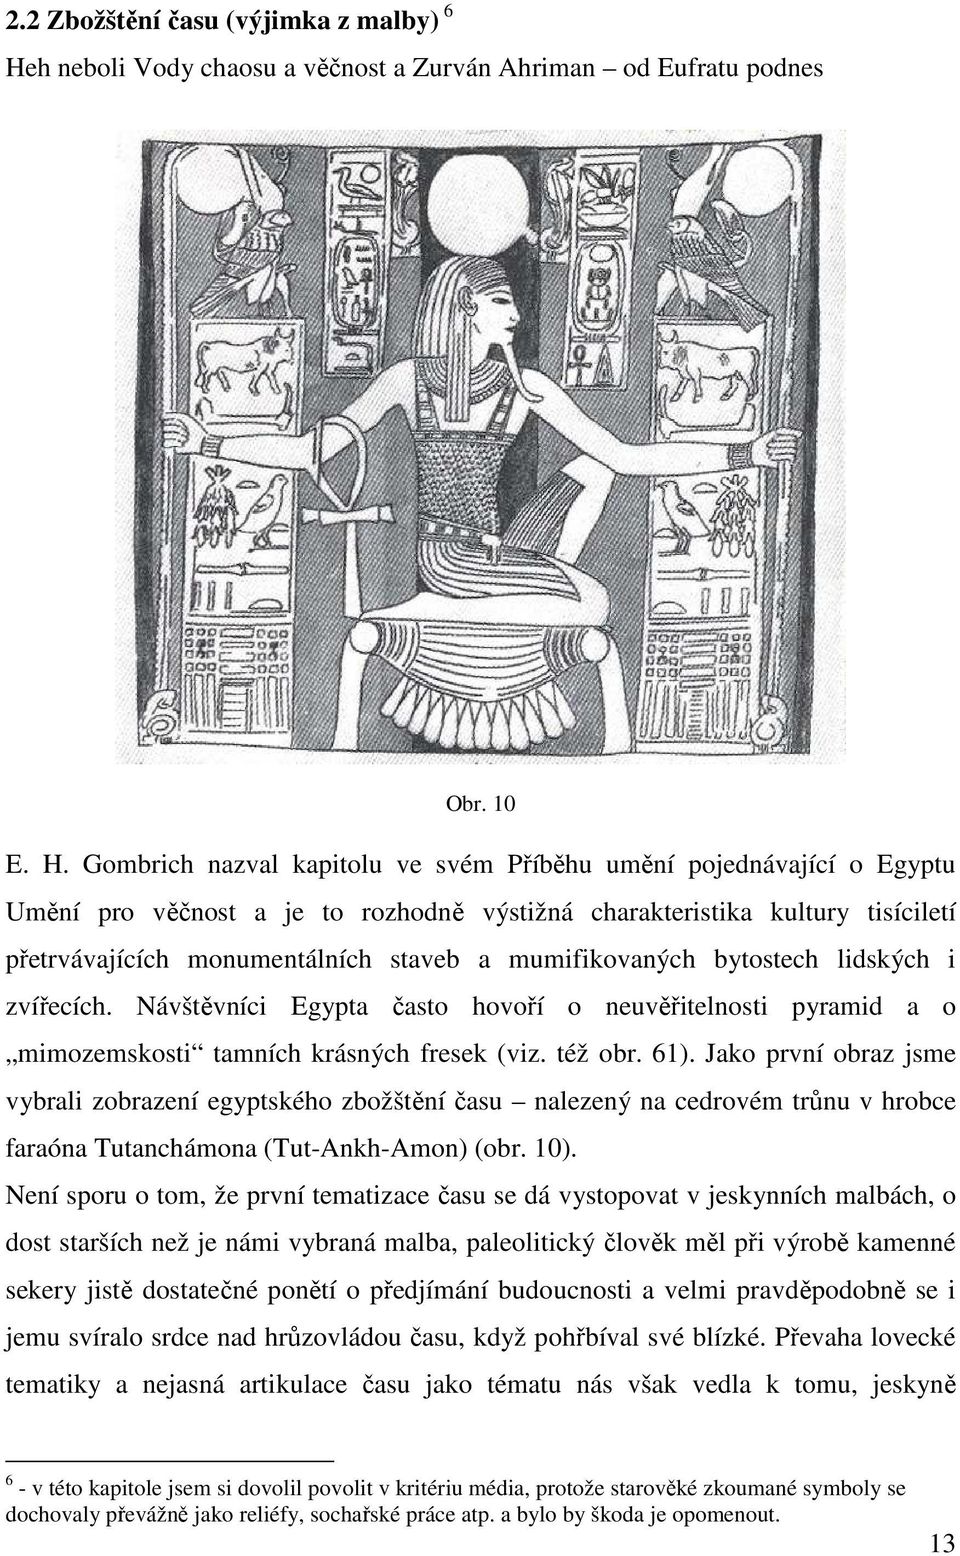 Gombrich nazval kapitolu ve svém Příběhu umění pojednávající o Egyptu Umění pro věčnost a je to rozhodně výstižná charakteristika kultury tisíciletí přetrvávajících monumentálních staveb a